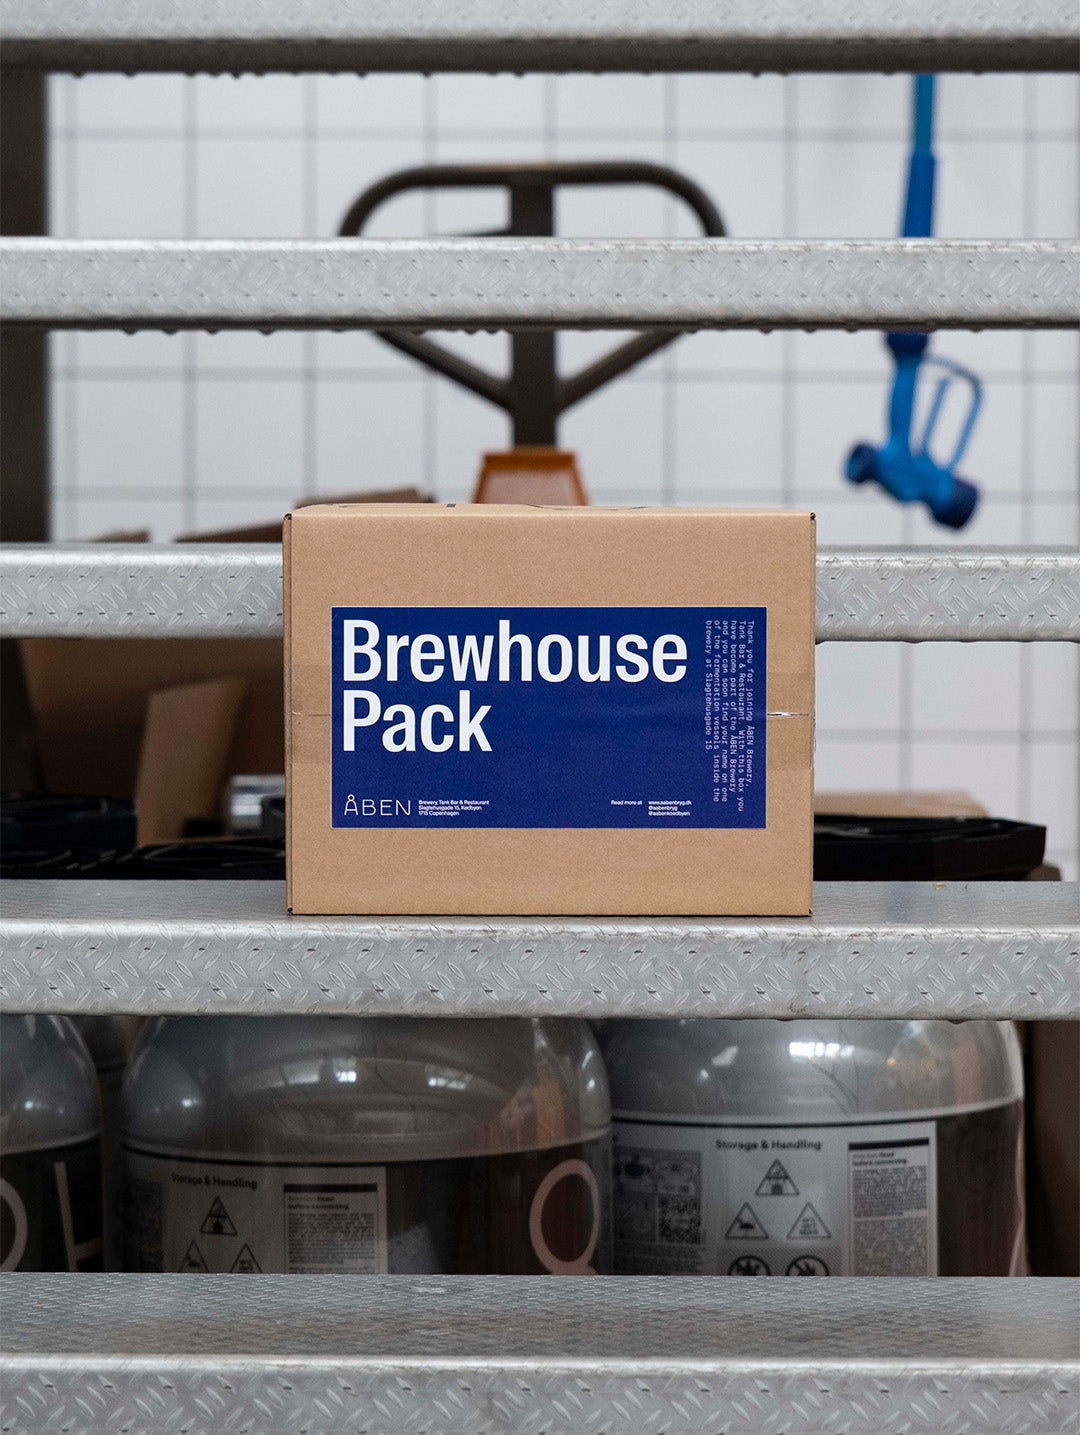 ÅBEN Brewhouse Pack